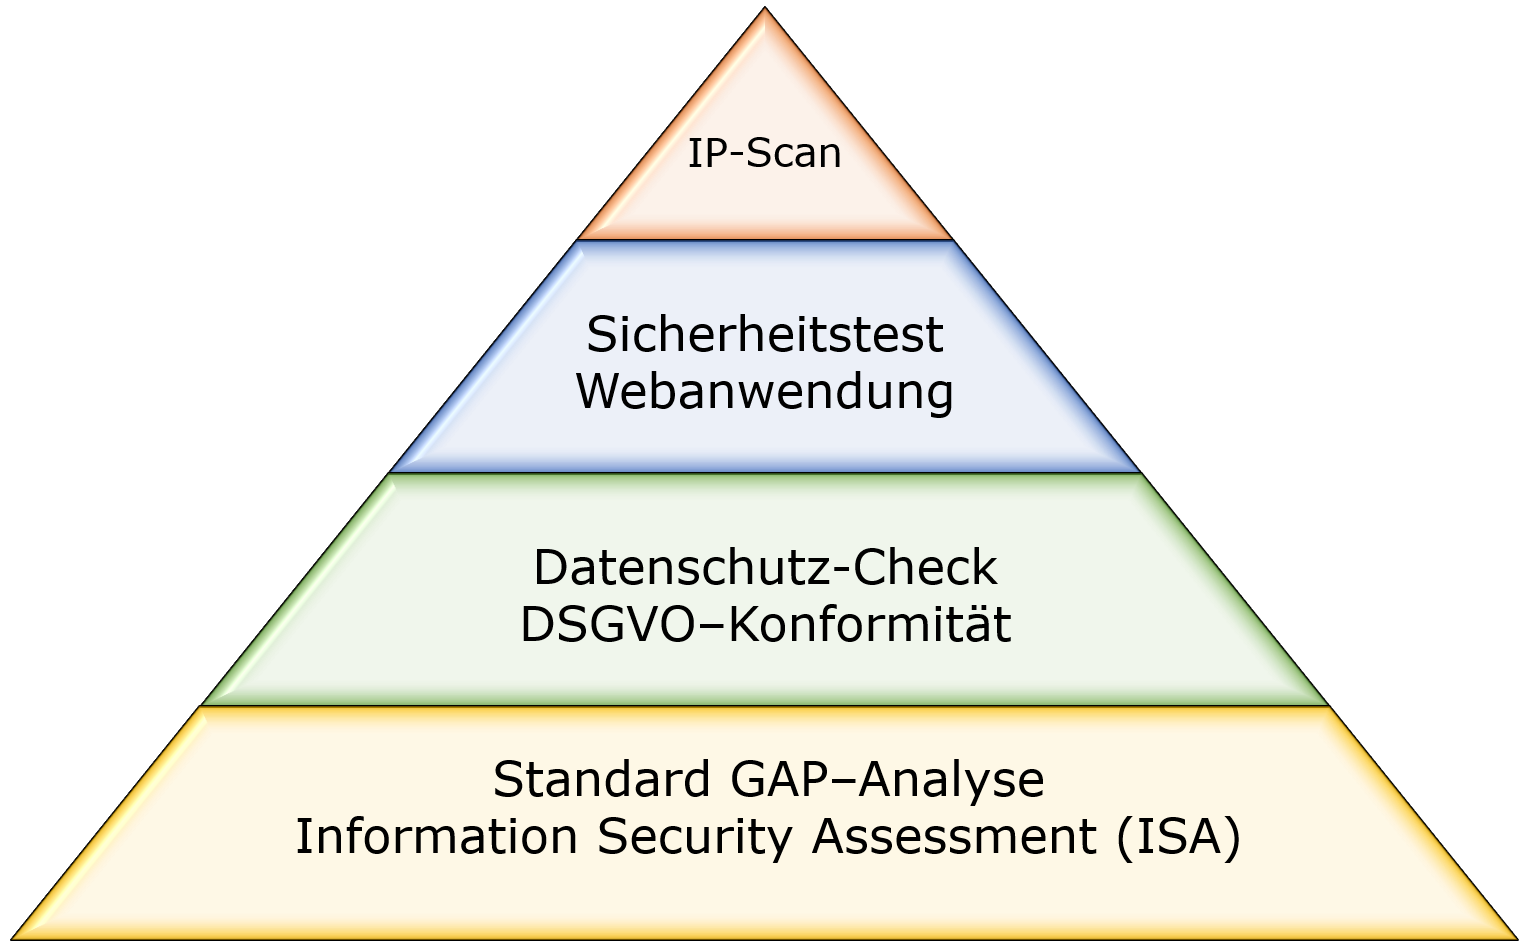 Grafik: Pyramide mit GAP-Analysen - Standard GAP-Analyse, Information Security Assessment (ISA), DSGVO-Check, Sicherheitstest, IP-Scan